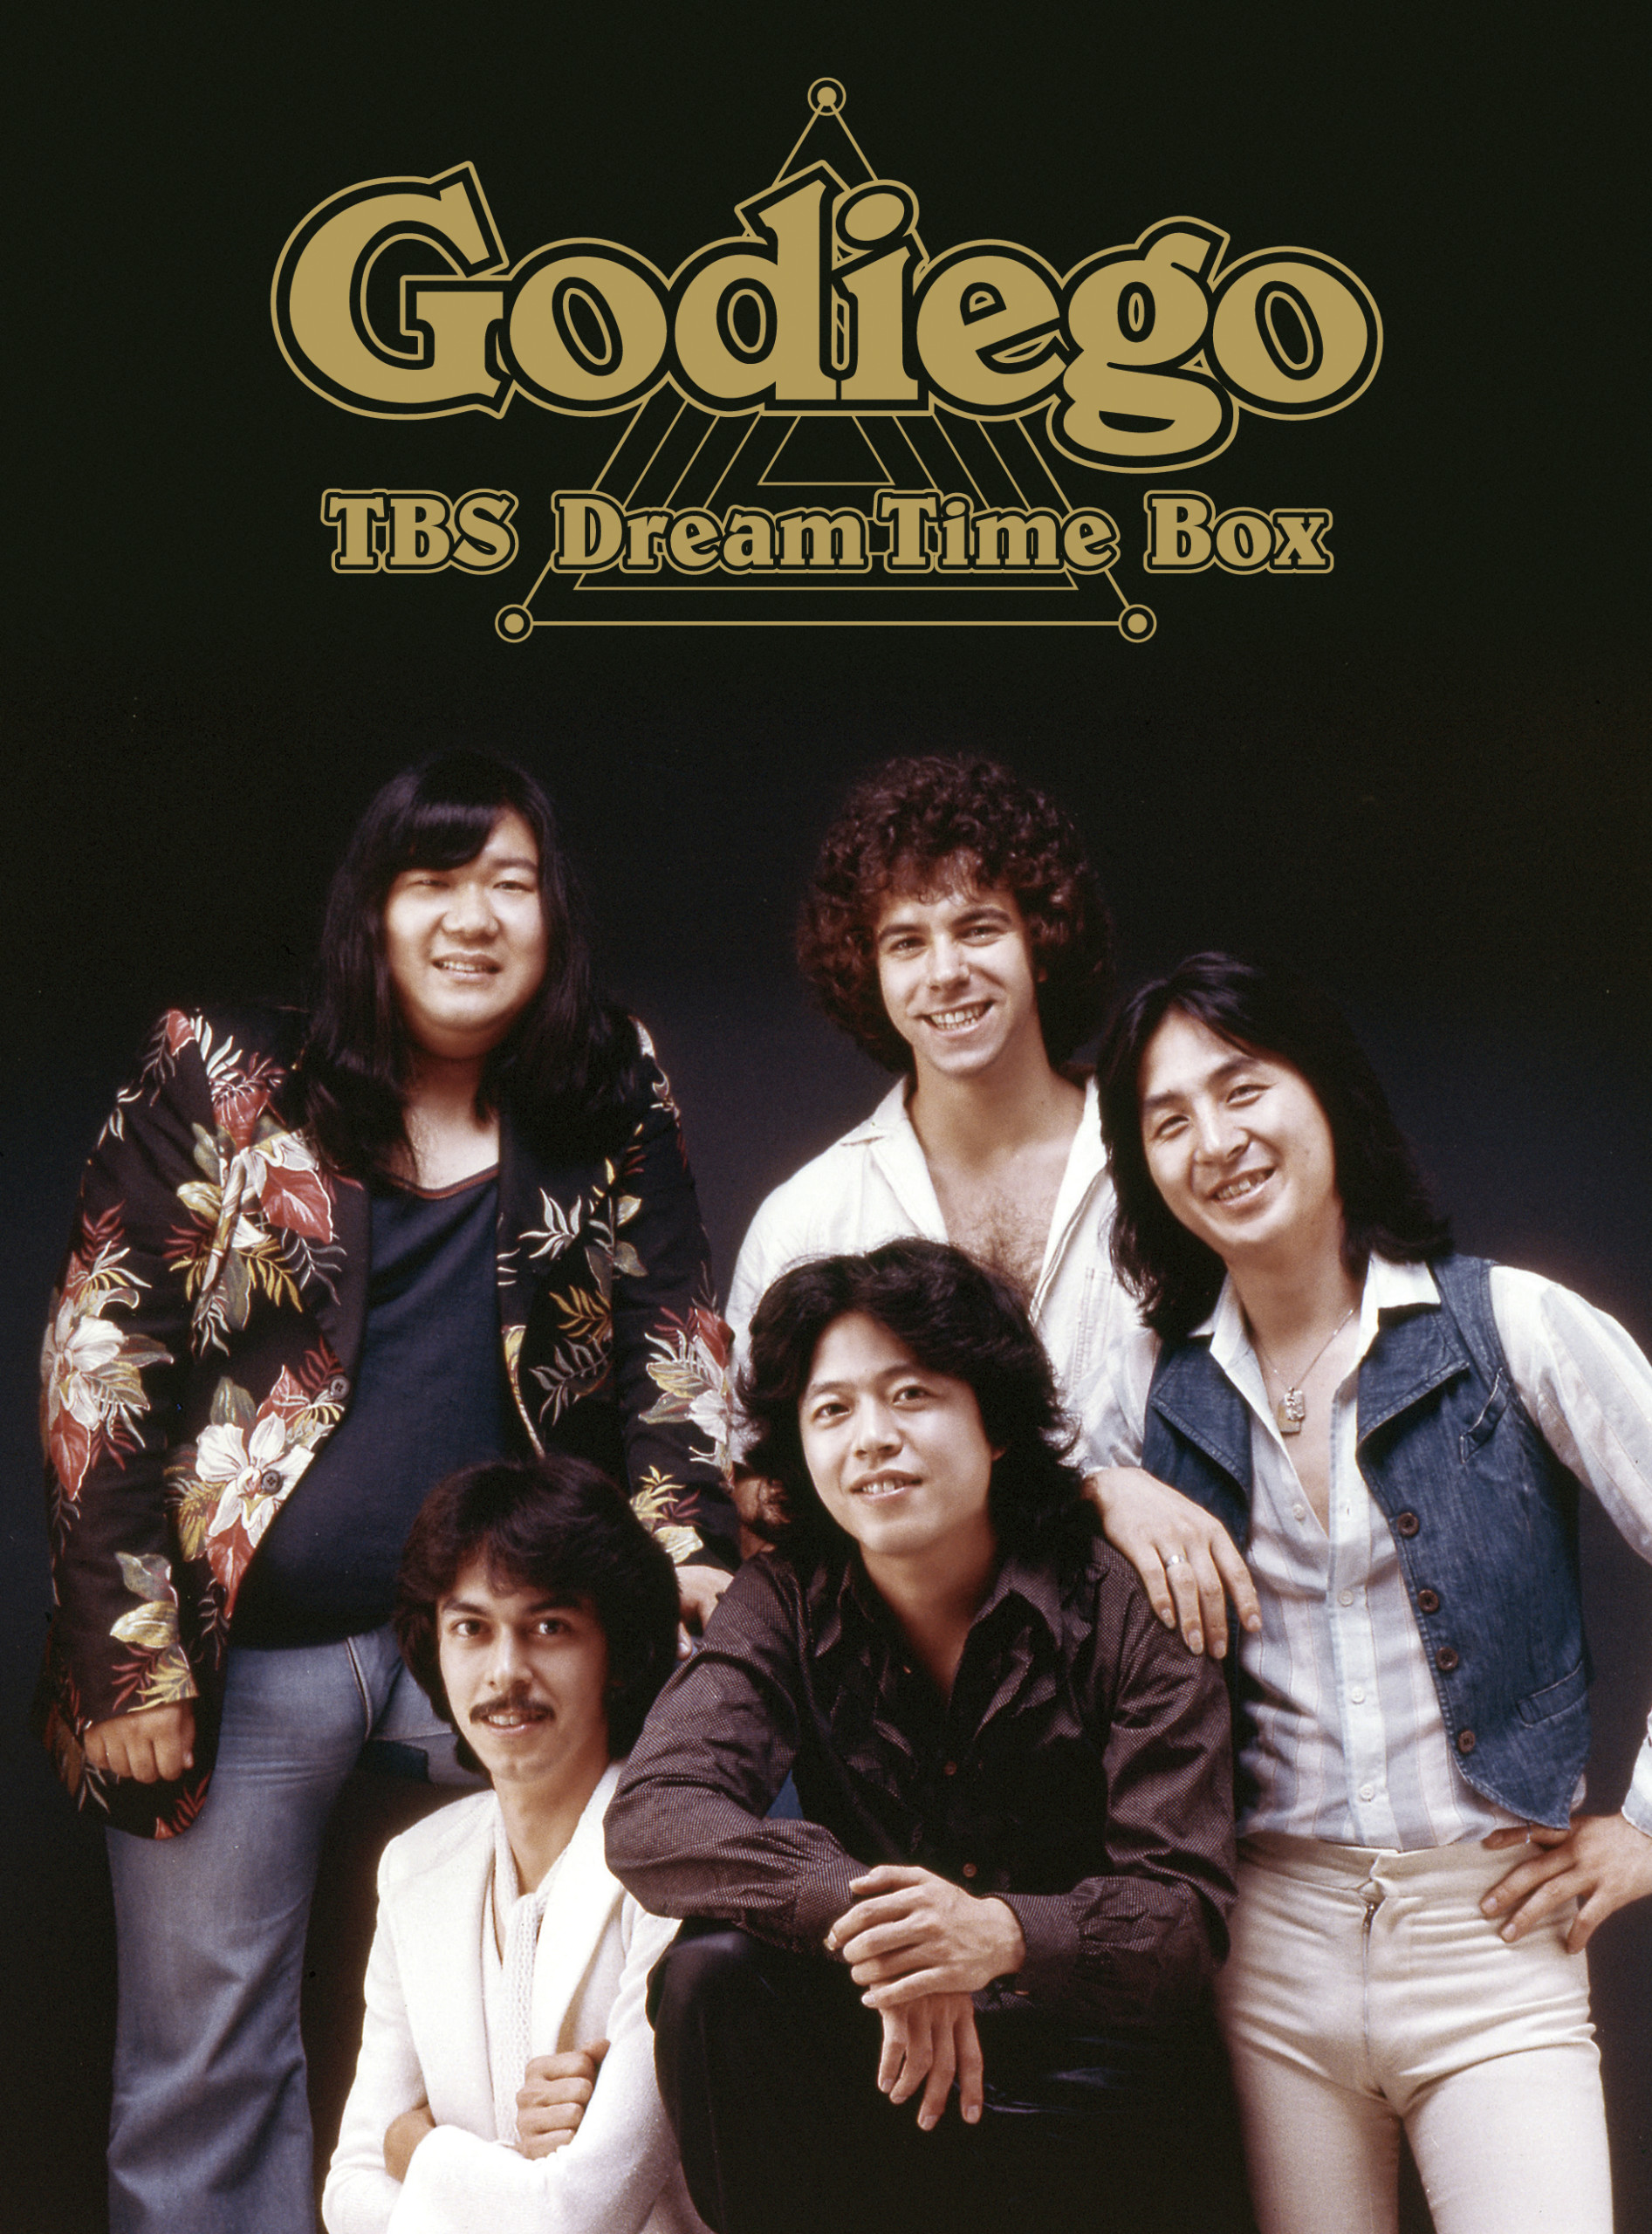 ゴダイゴが奇跡のDVD BOX『TBS Dream Time Box』を発売。「ザ 